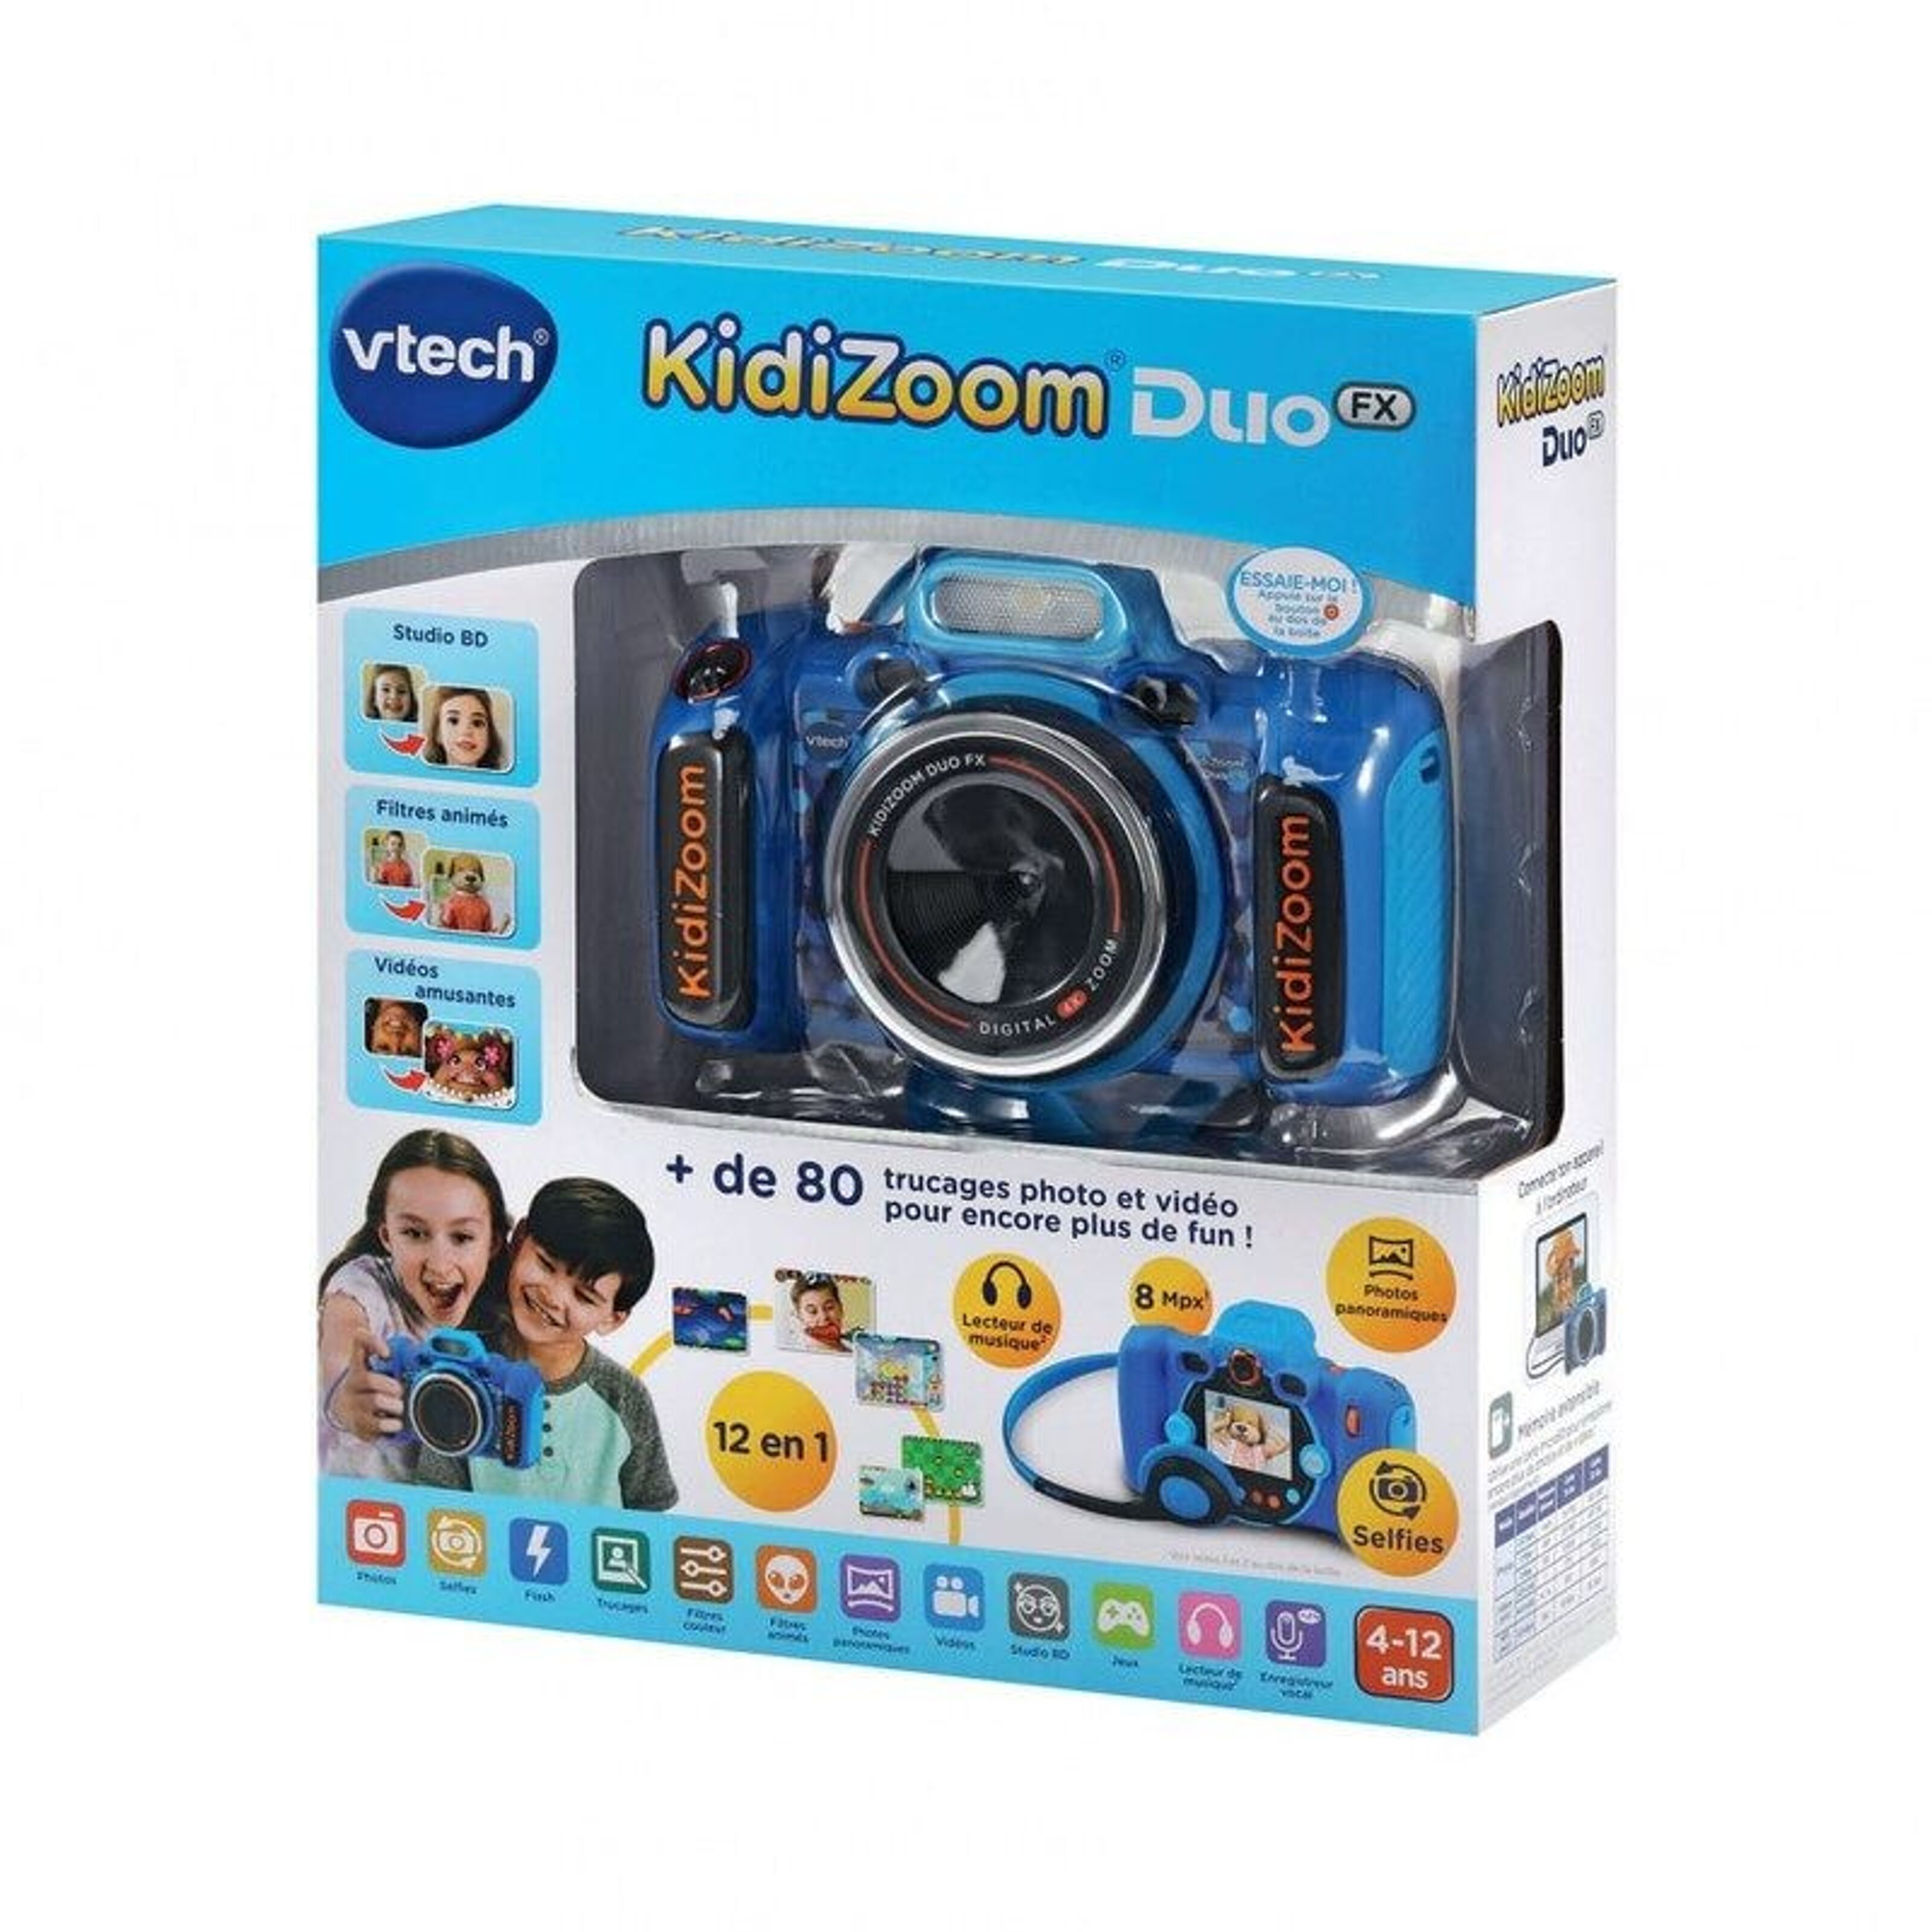 VTech - Kidizoom Duo FX cámara de fotos infantil 